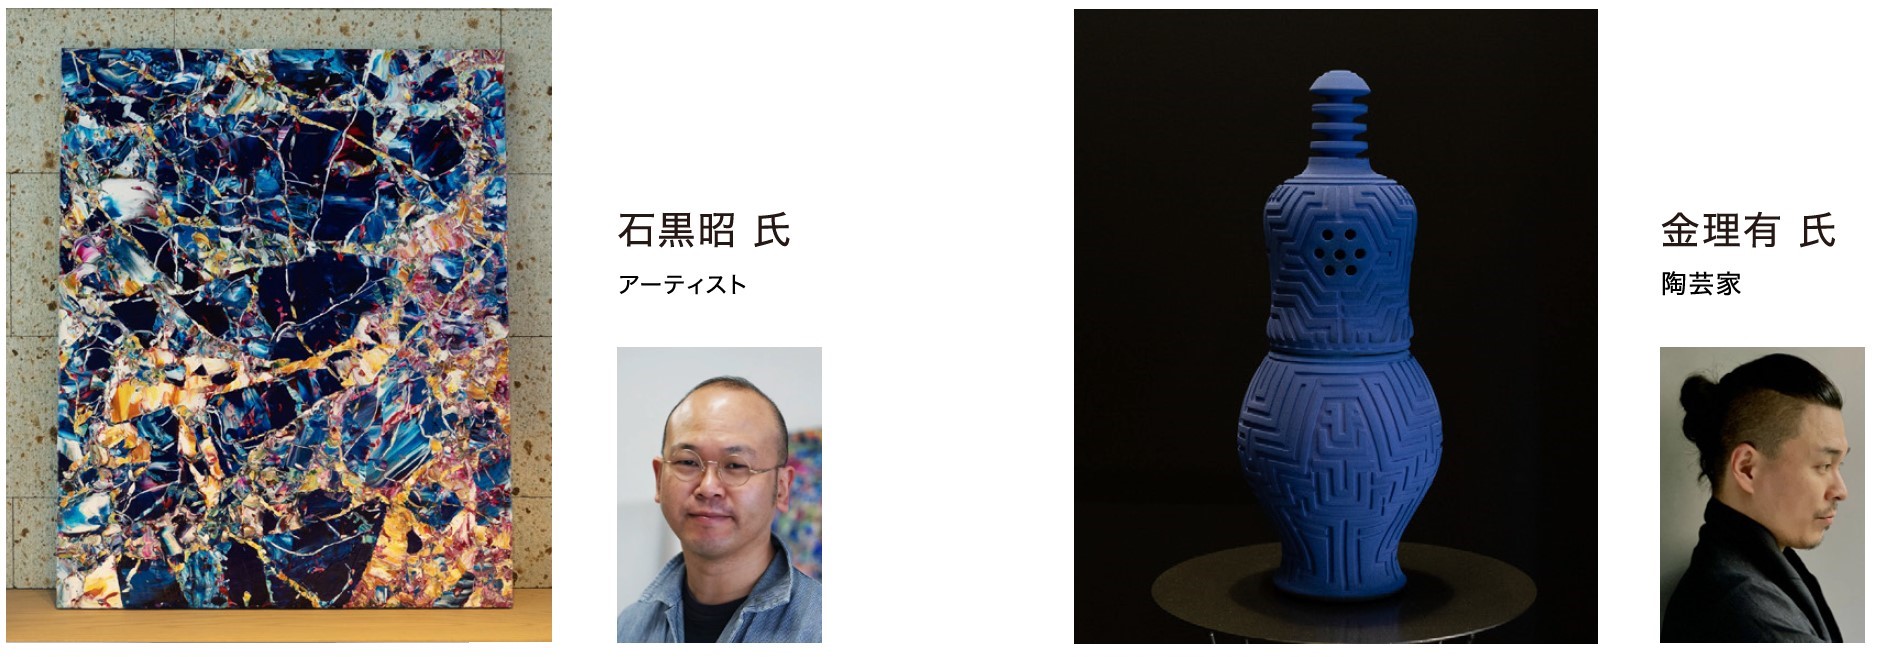 【日本テレビ制作番組とコラボ】SAWAMURA史上最高峰のモデルハウス「THE ART HOUSE」5/9(木)滋賀県高島市にグランドオープンのサブ画像4